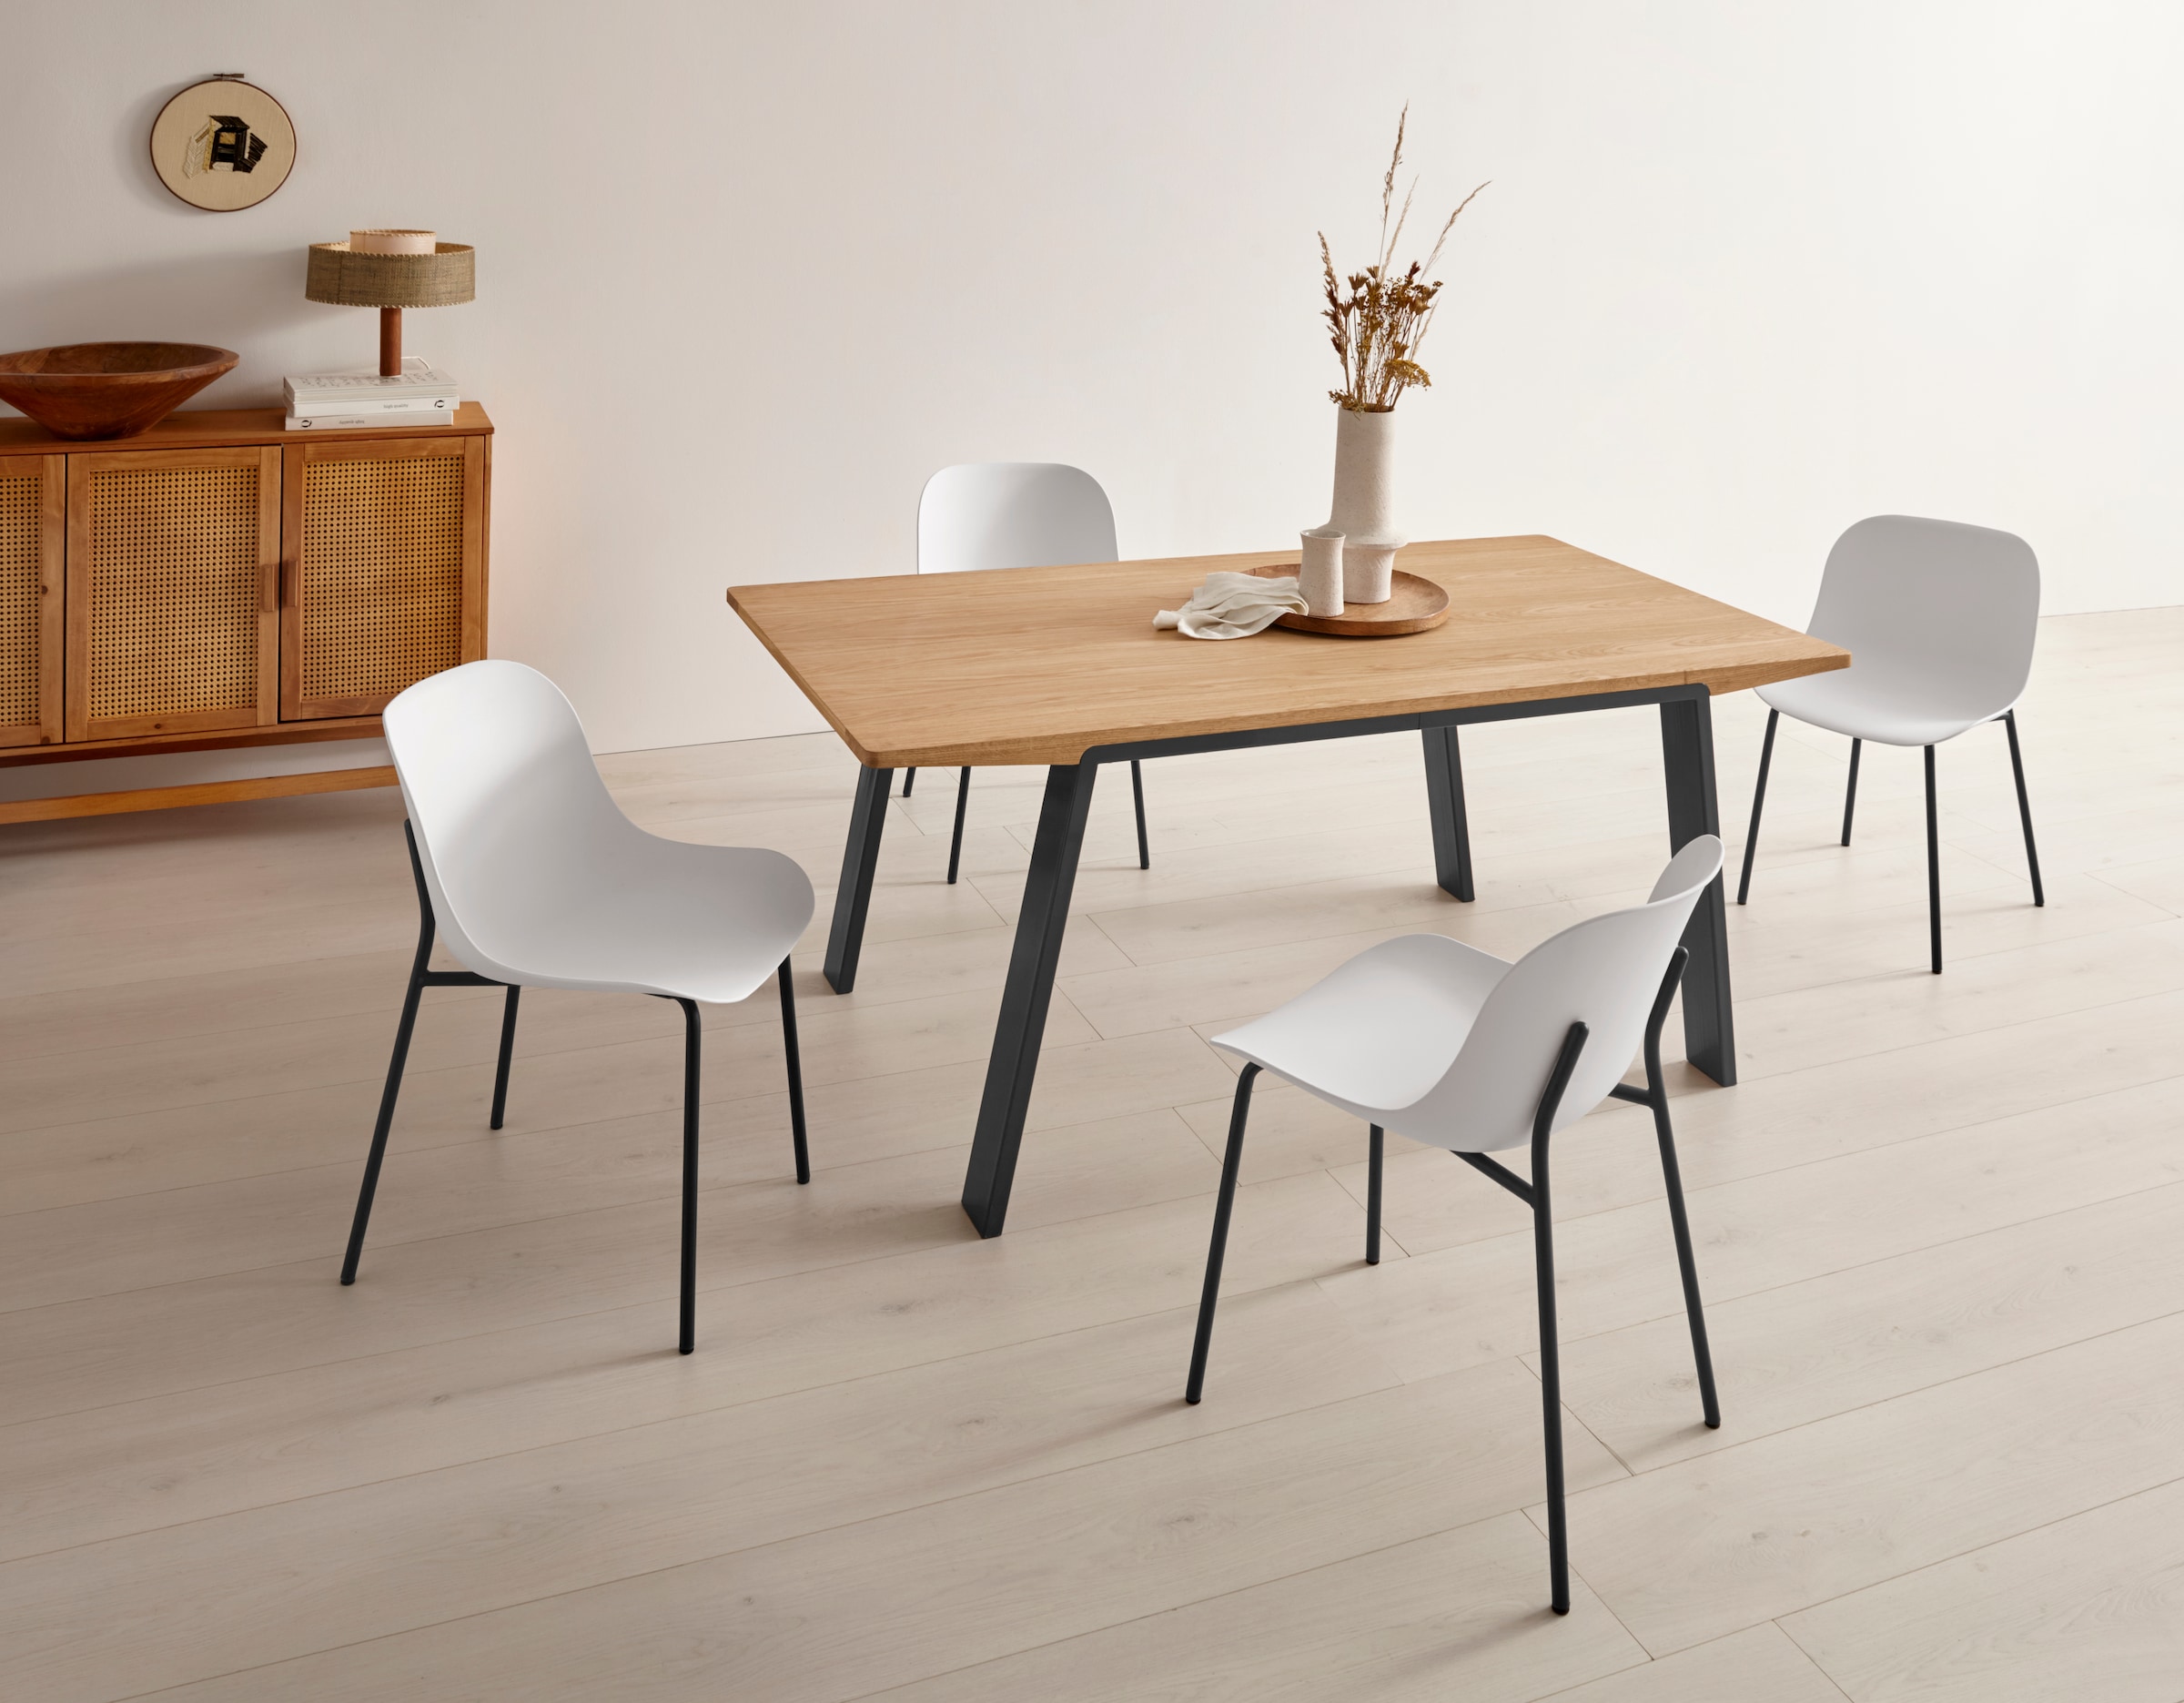 OTTO products Esstisch »Flemming«, Massivholz Eiche, 175 cm oder 225 cm, elegant gewölbte Tischplatte